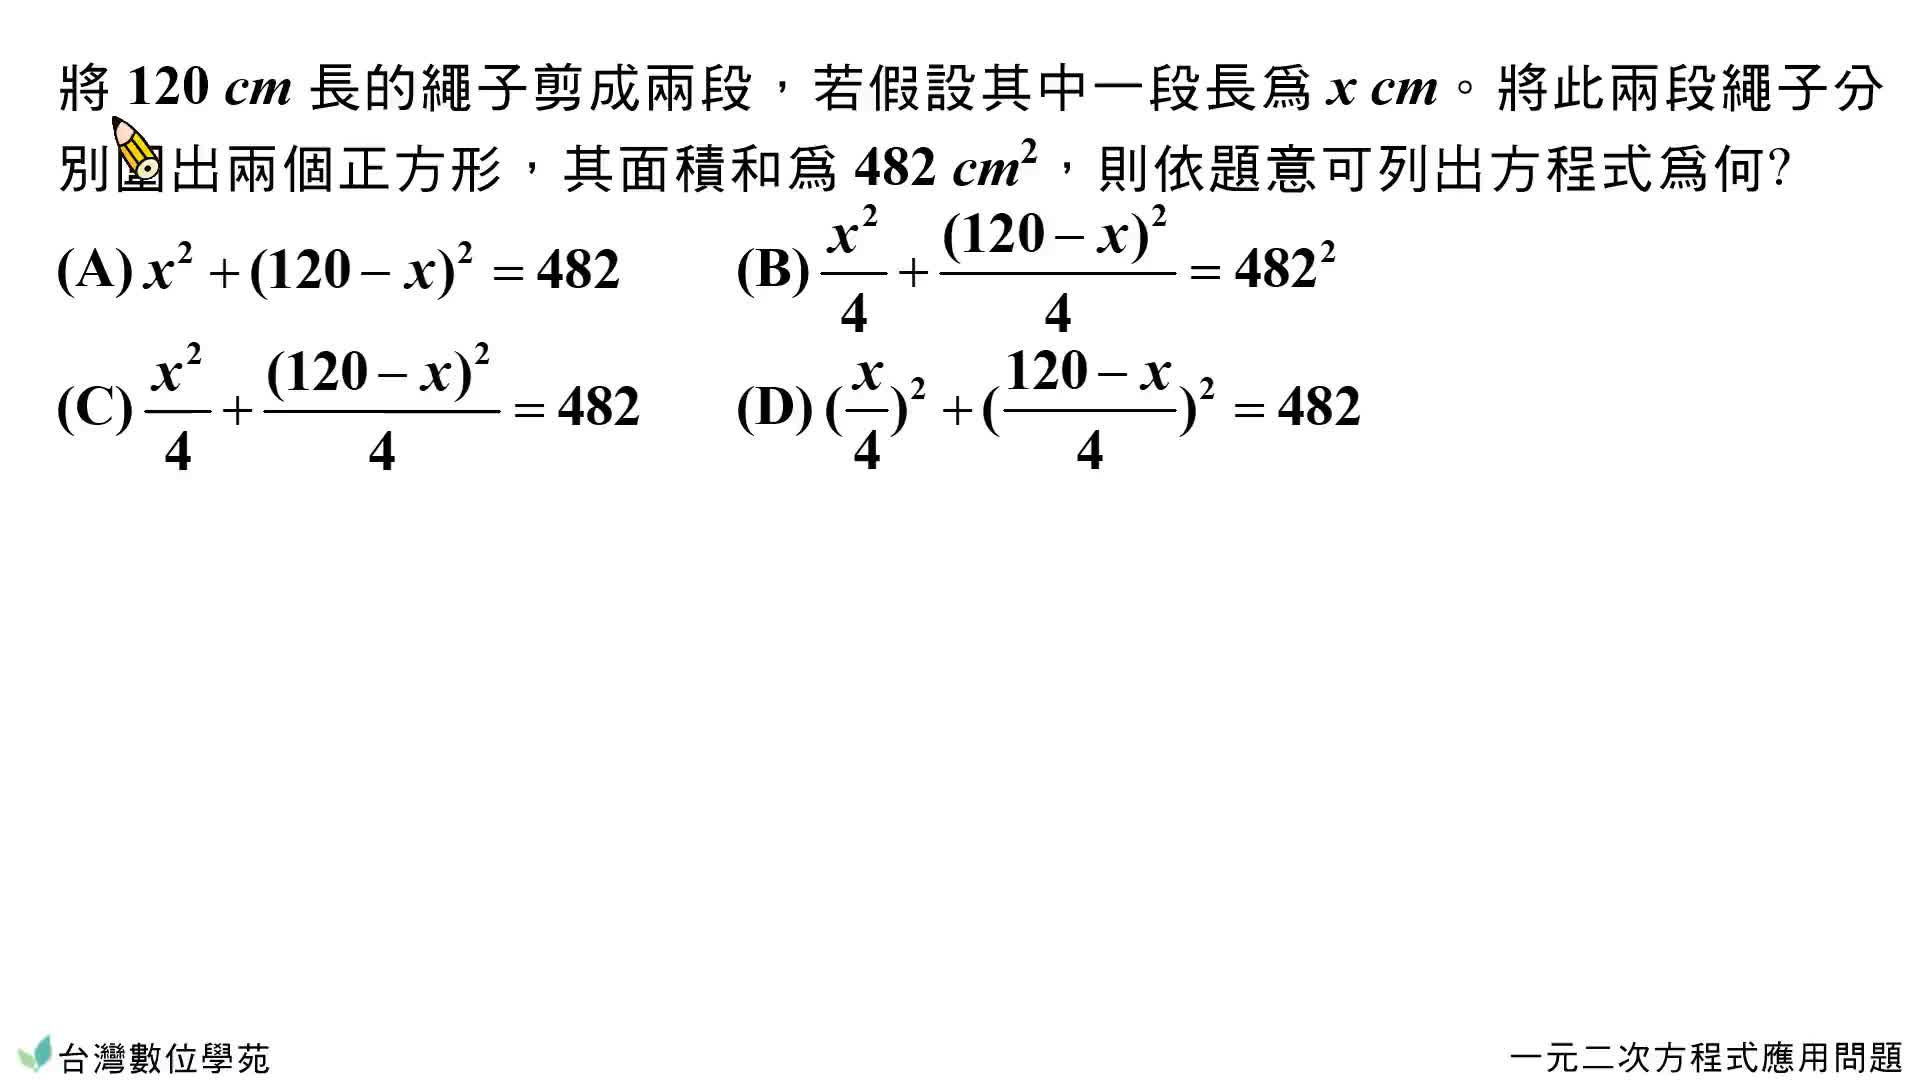 綜 一元二次方程式應用問題 考題 台灣數位學苑 K12 數學